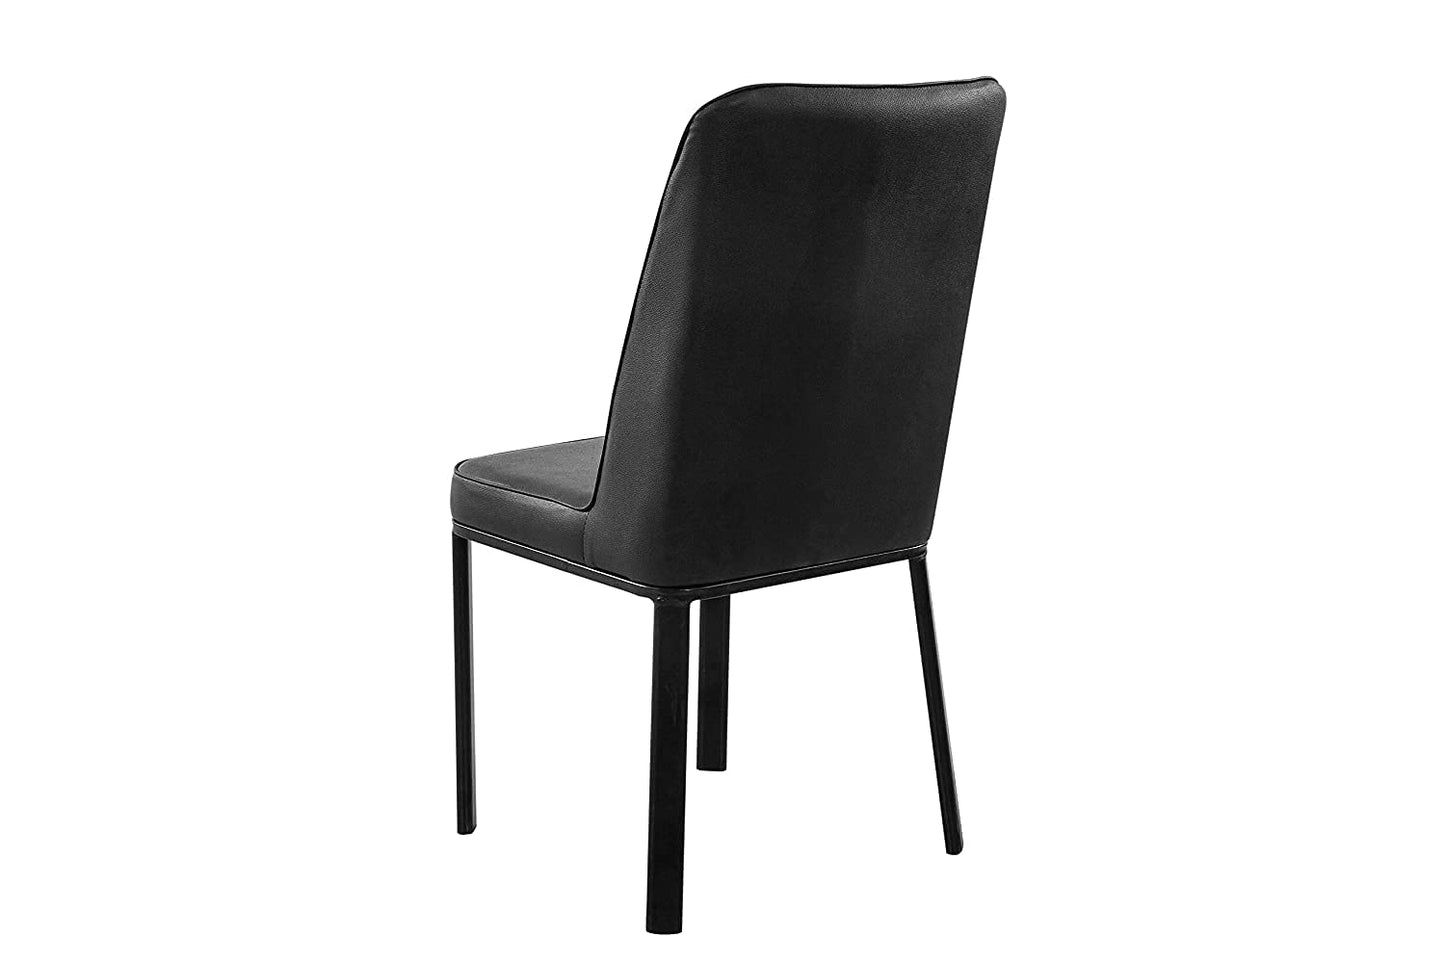 Lyon Metal Dining Chair - metallikafurniture.com